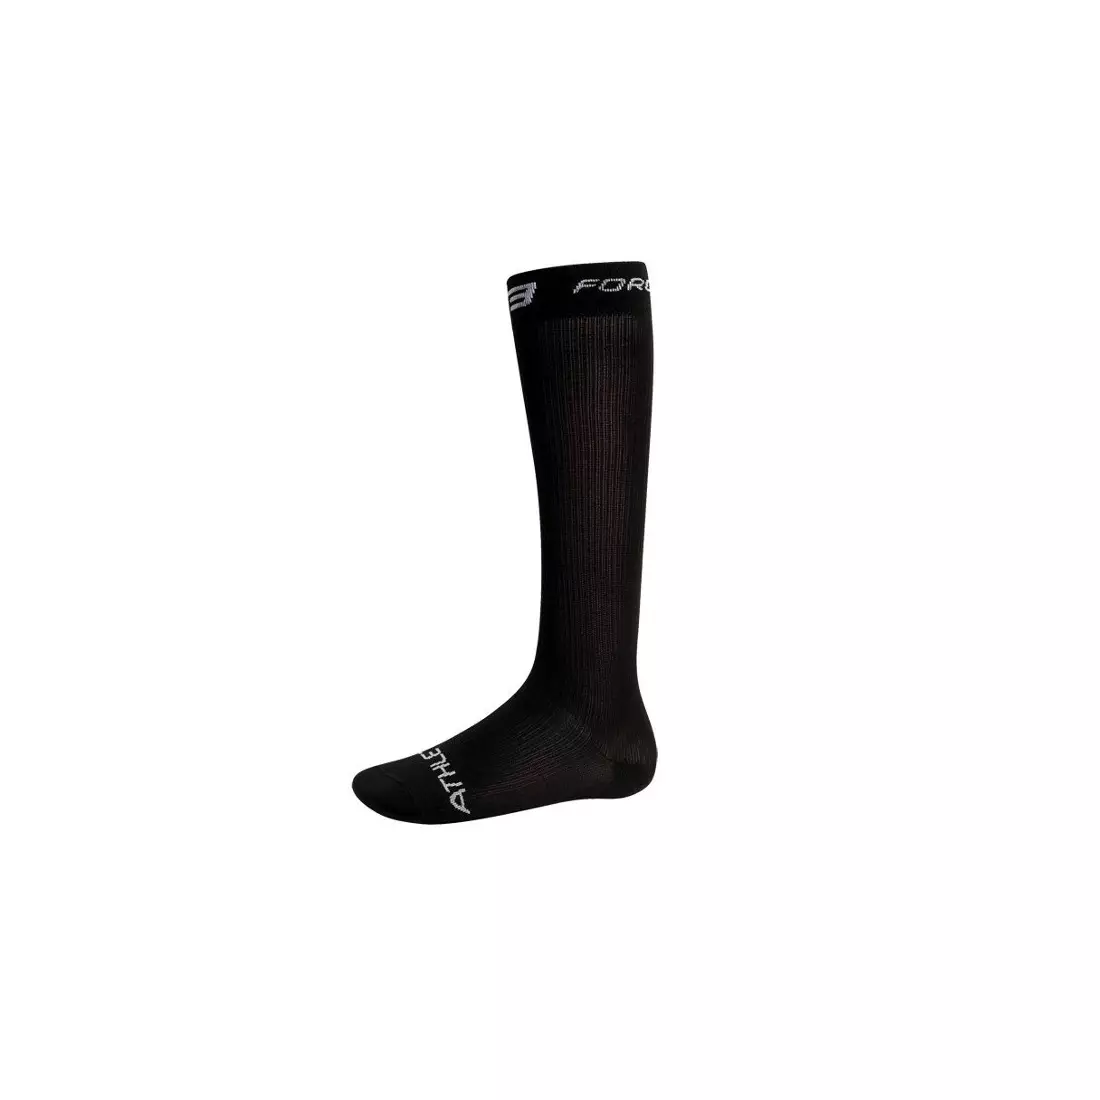 FORCE compression socks 90103, color: Black